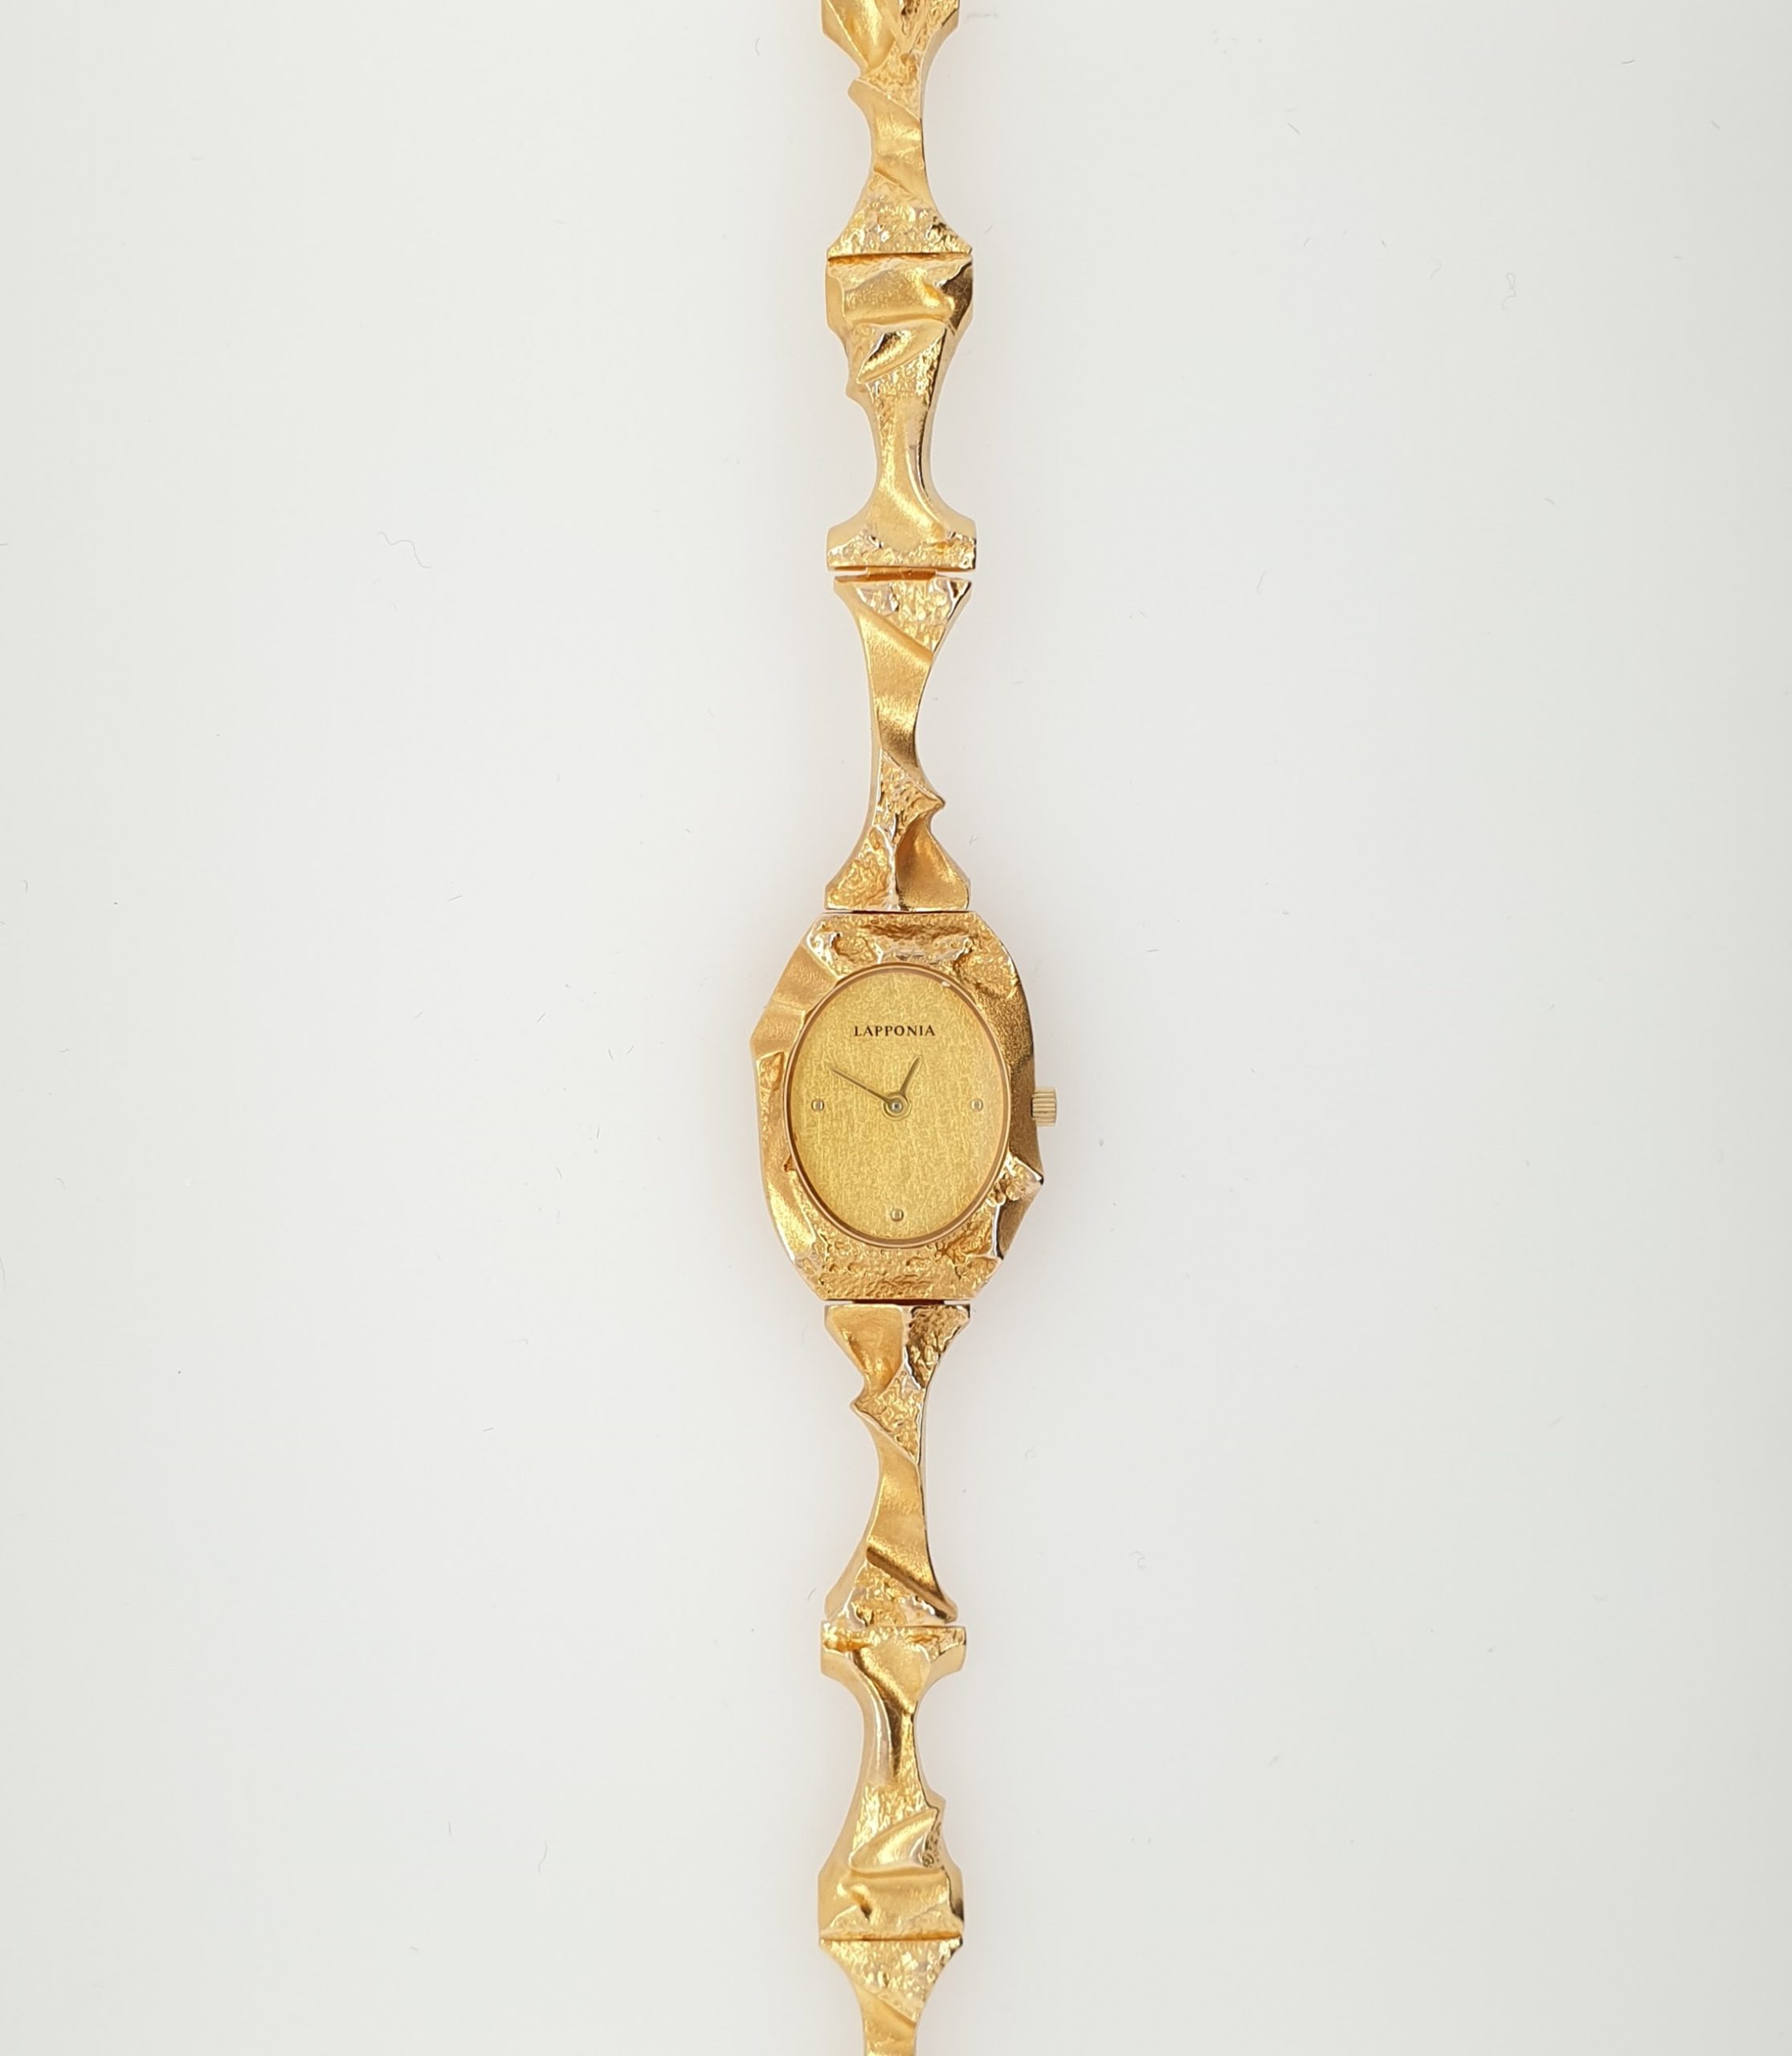 Catastrofaal temperament Diversen Goud Lapponia dames pols horloge Pola Negri #24918 | Goudsmederij/Juwelier  Arnold van Dodewaard